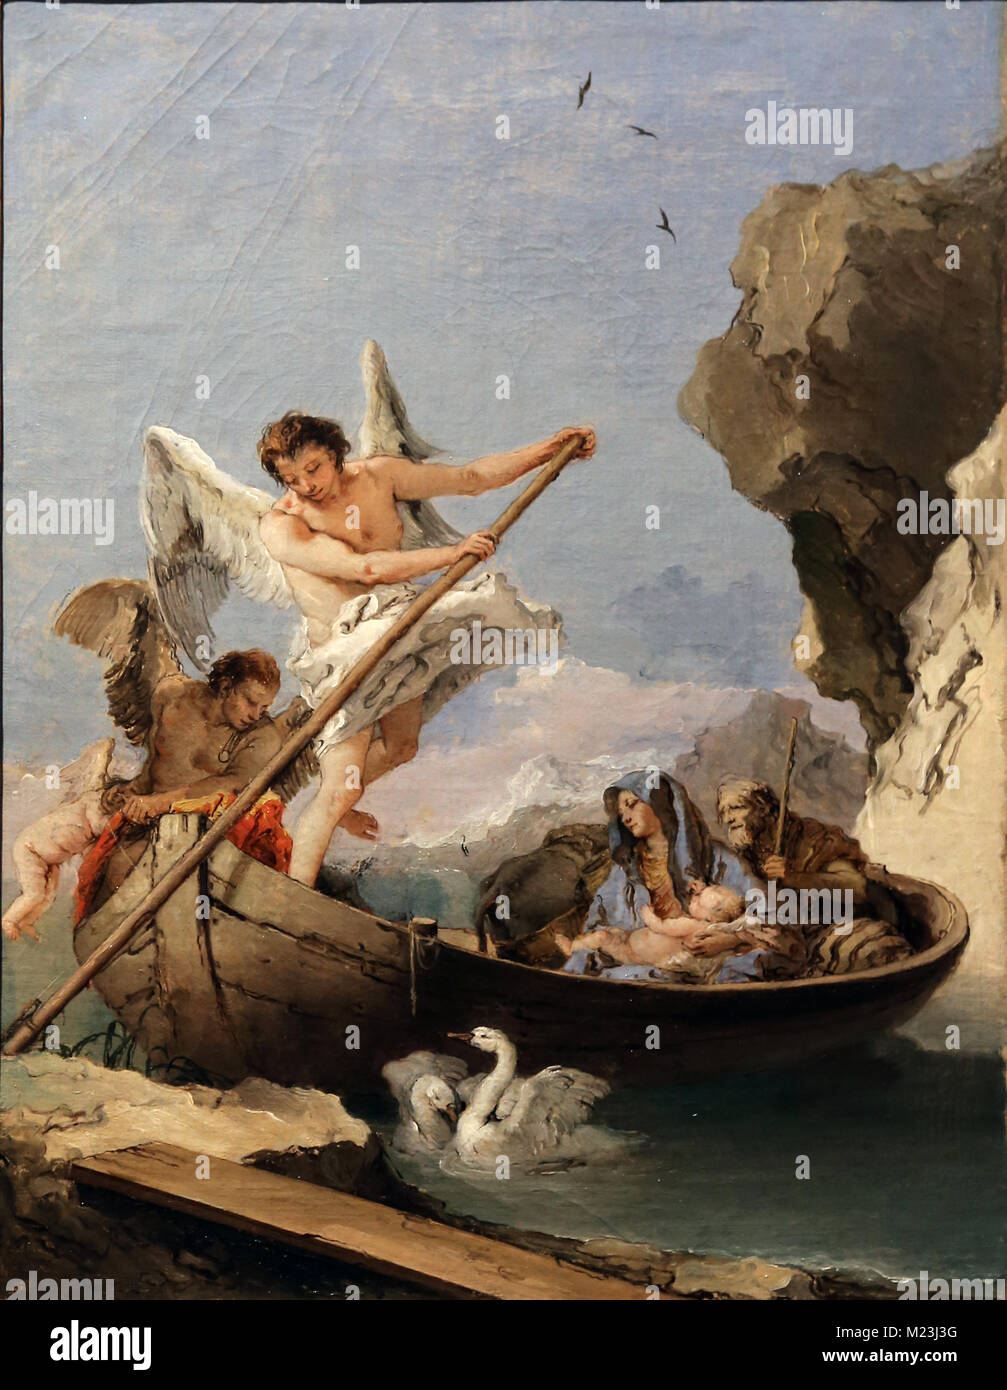 Flucht nach Ägypten von Giambattista Tiepolo (1696-1770). Öl auf Leinwand. Zwischen 1765 und 1770 gemalt. Museu Nacional de Arte Antiga. Stockfoto